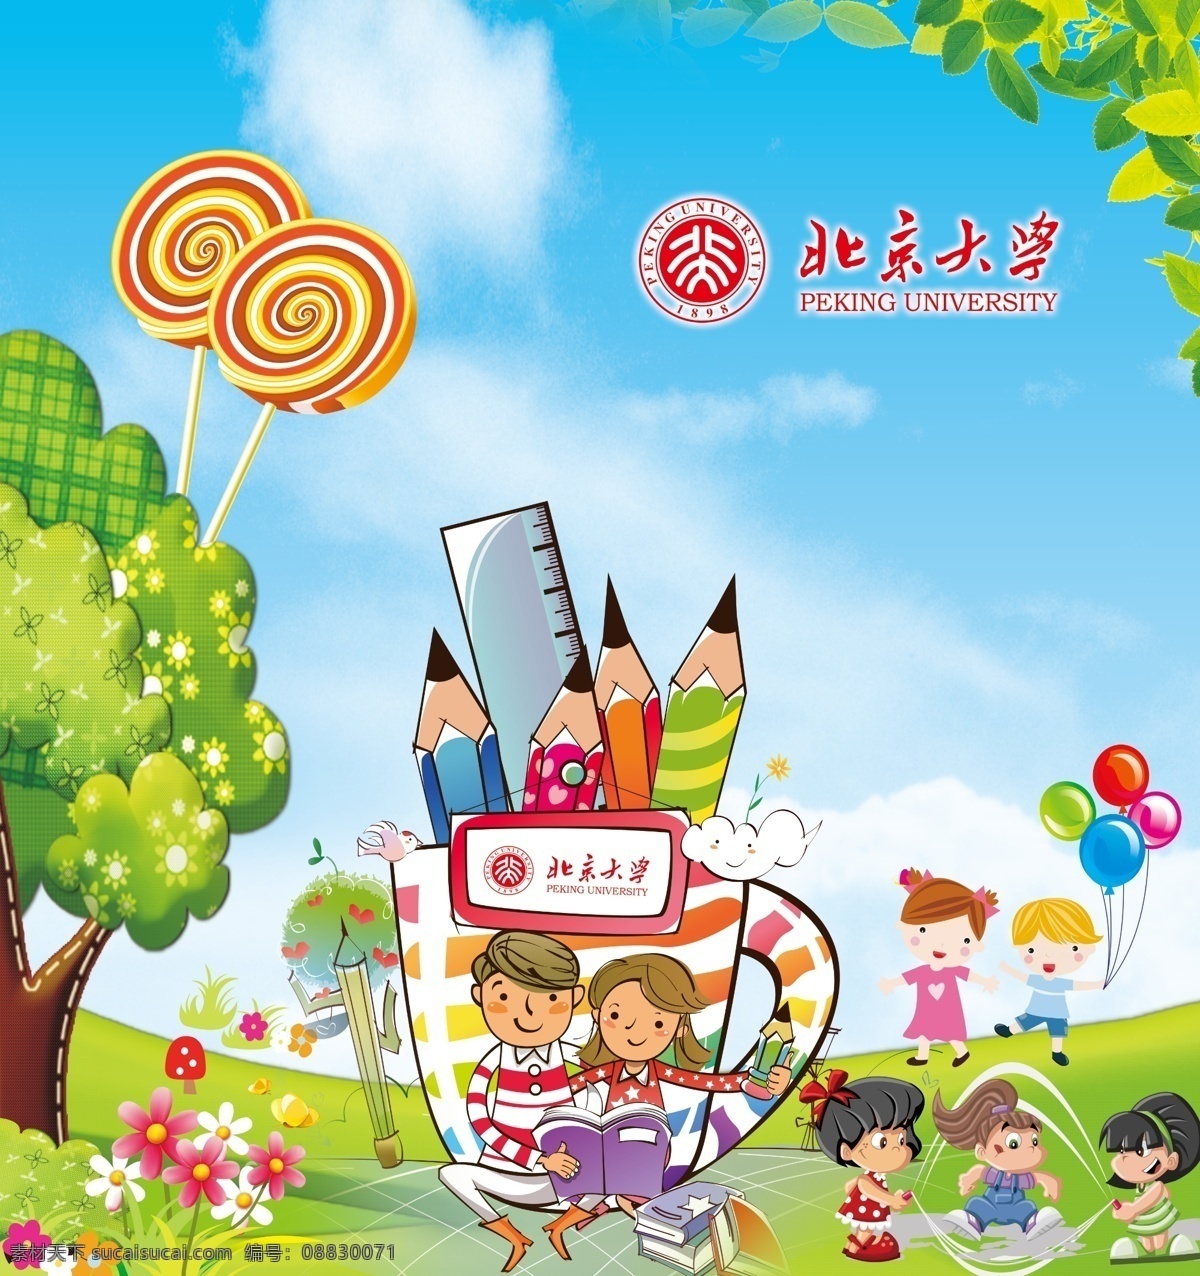 儿童乐园 儿童 儿童教育 卡通 儿童卡通 少儿 卡通人物 绿叶 蓝天 花草 幼儿 幼儿园 棒棒糖 北京大学 logo 学校 小学 小孩 绿色 树叶 广告设计模板 源文件